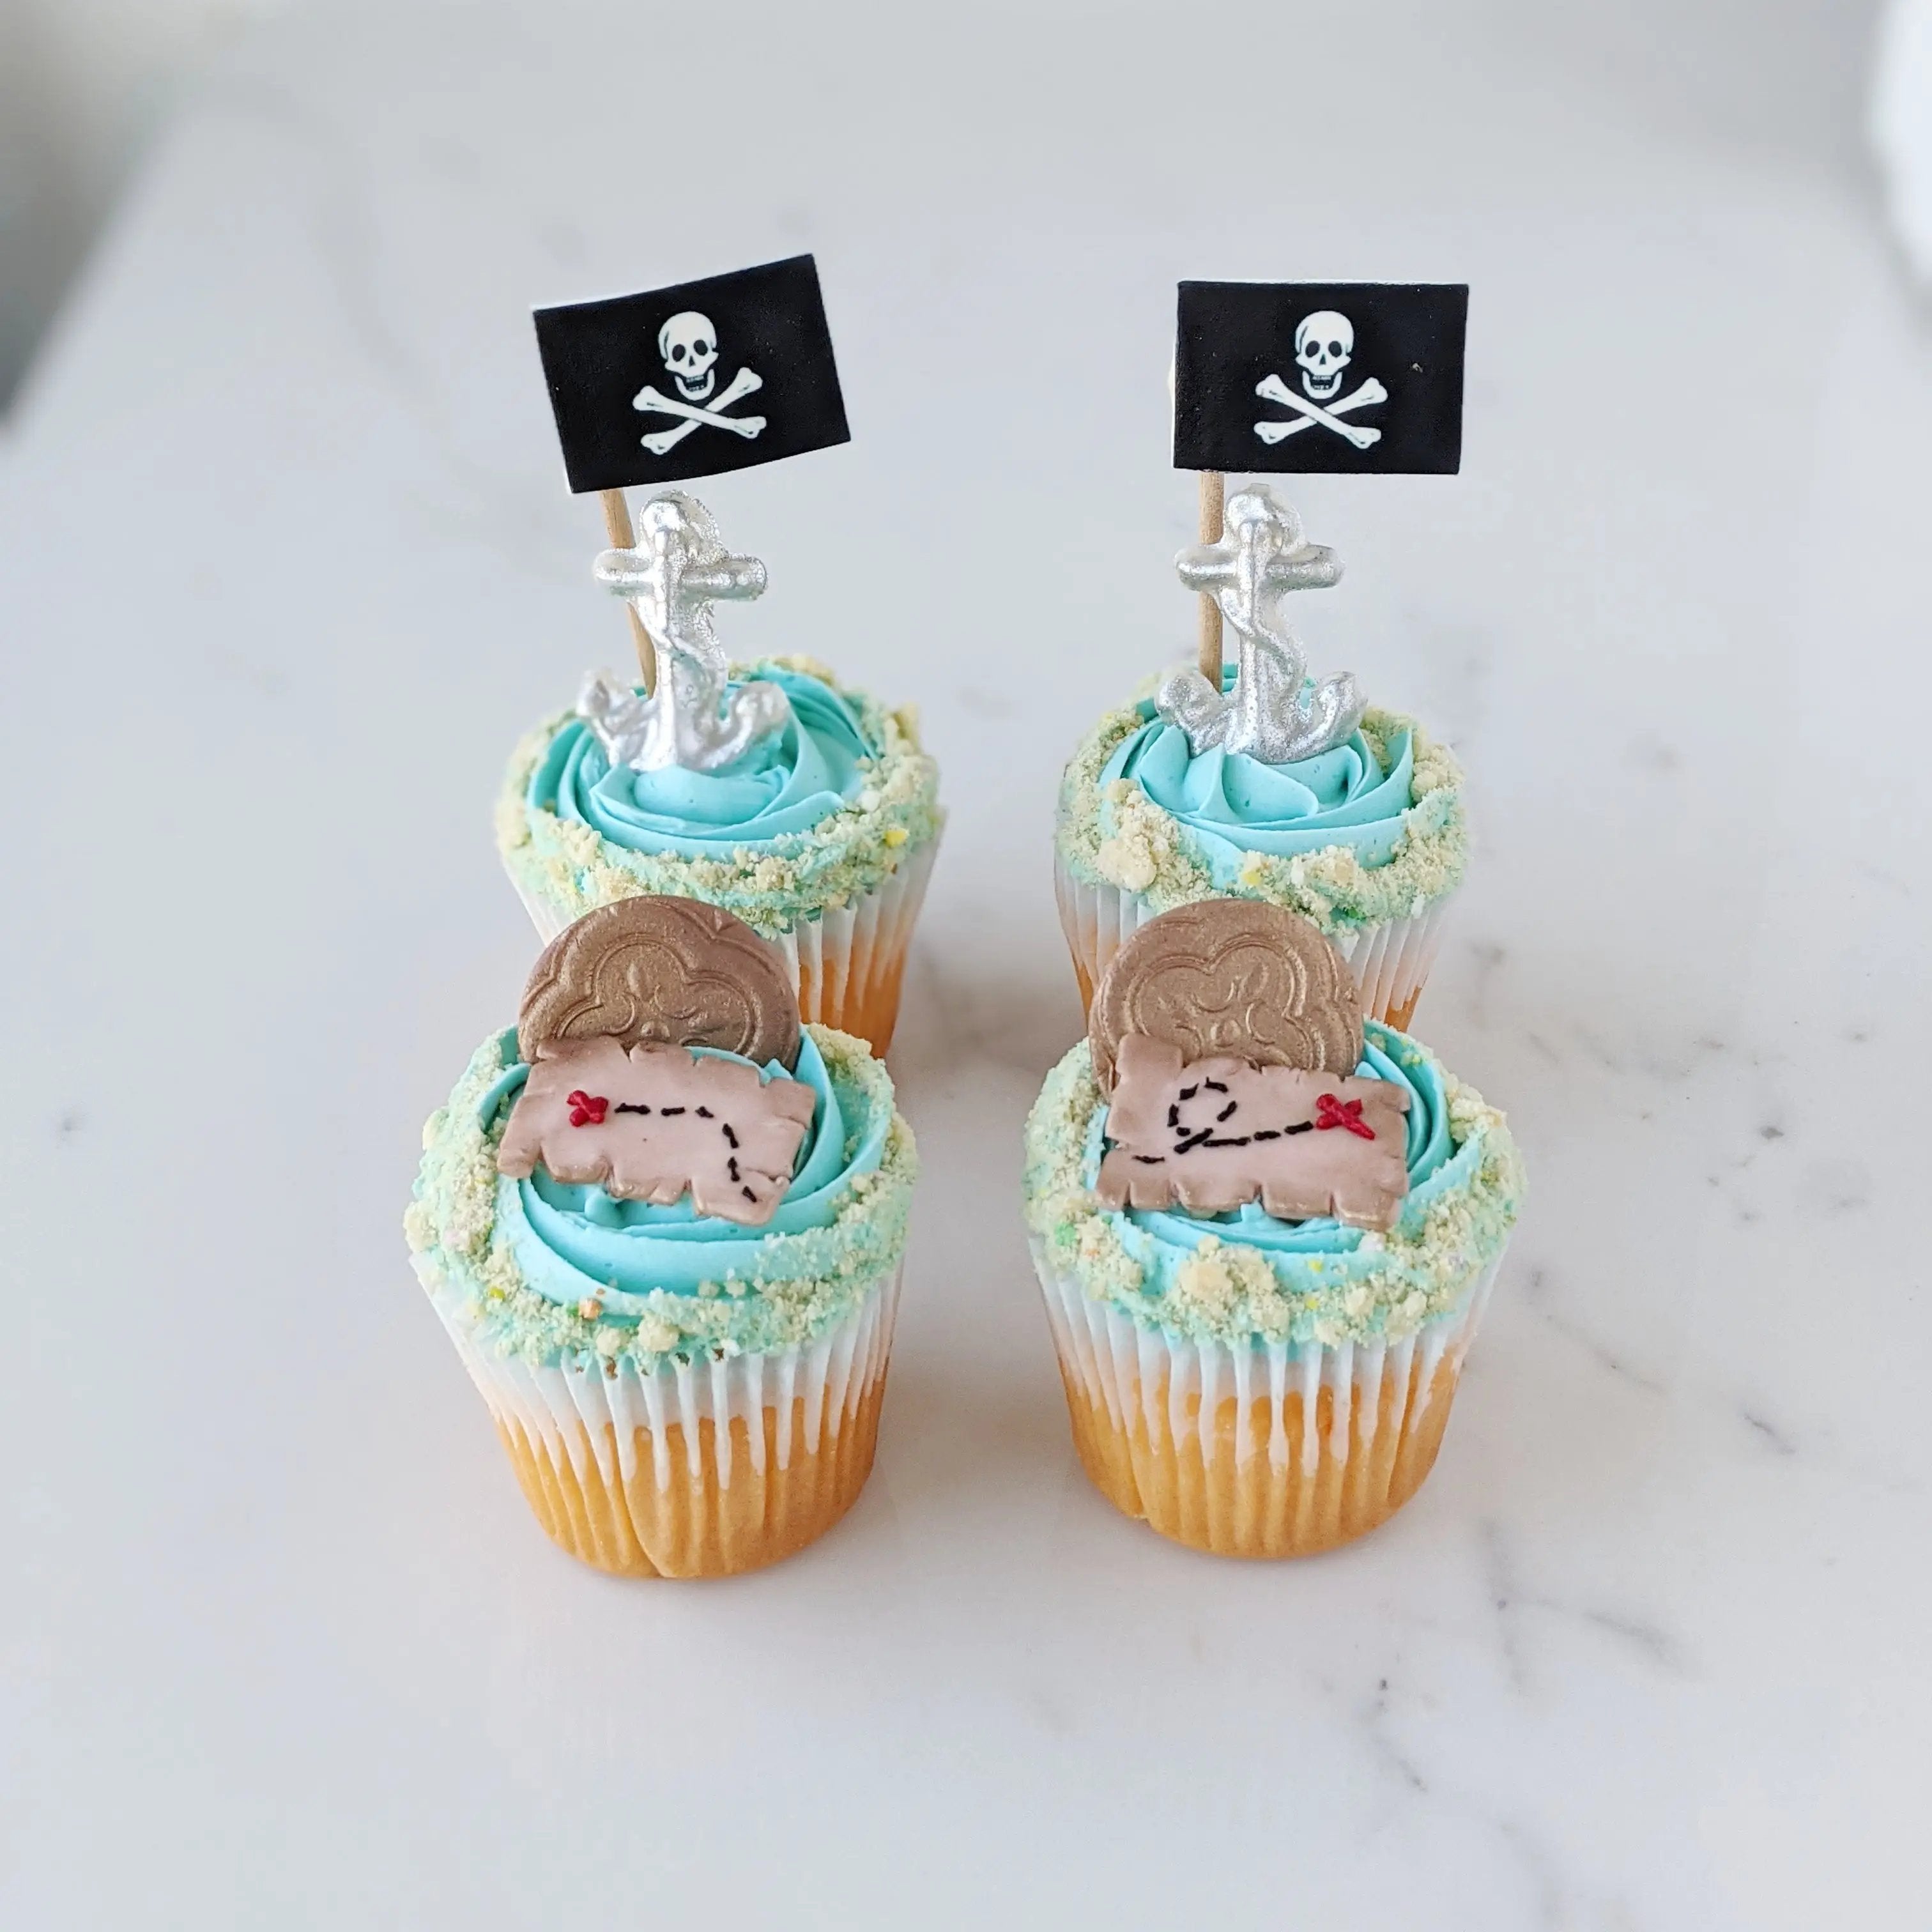 Pirate Cupcakes (per dozen)